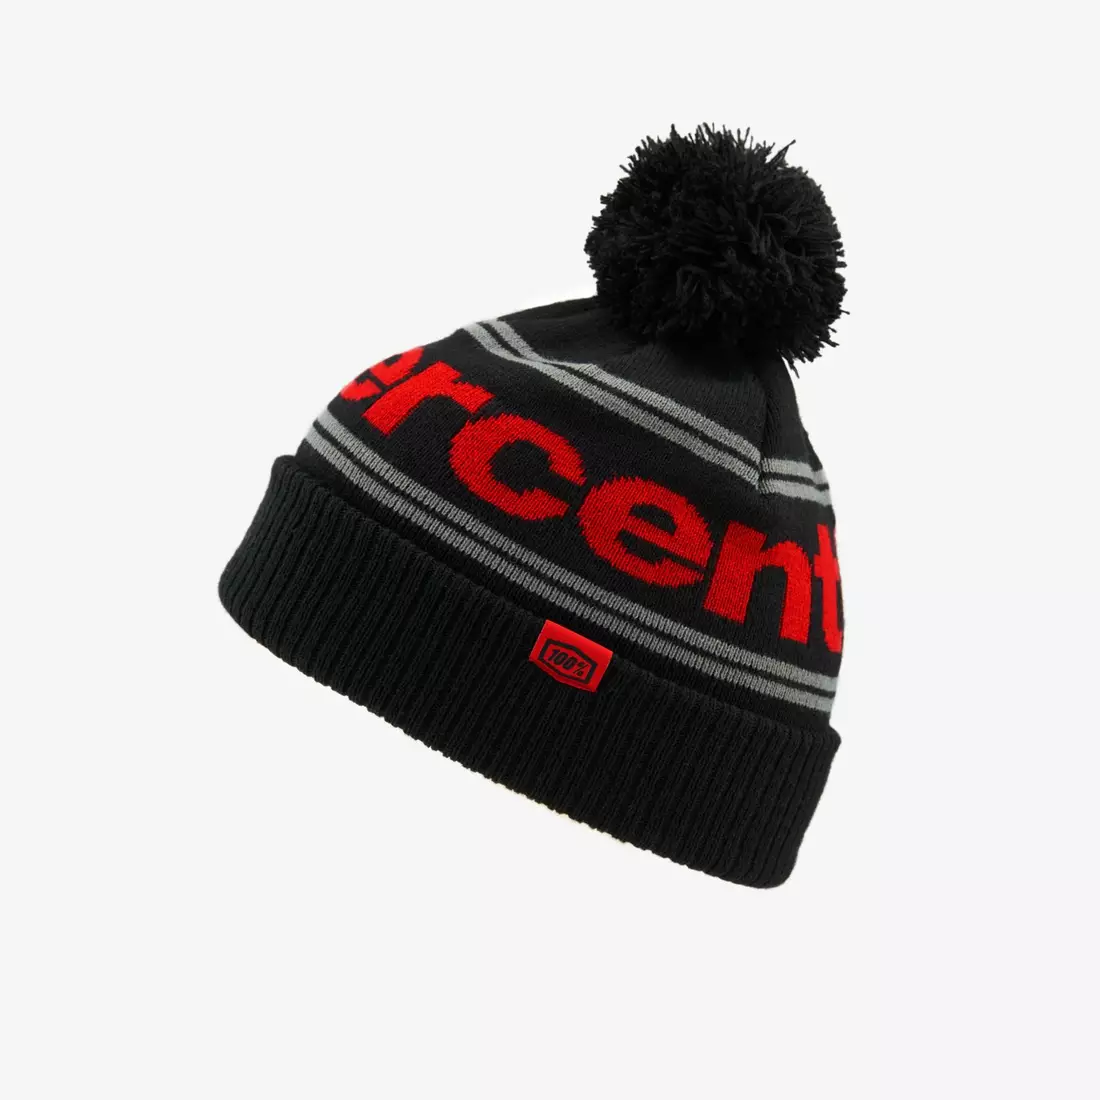 100% czapka zimowa z pomponem RISE Cuff Beanie w/Pom Pom black-red STO-20122-013-01